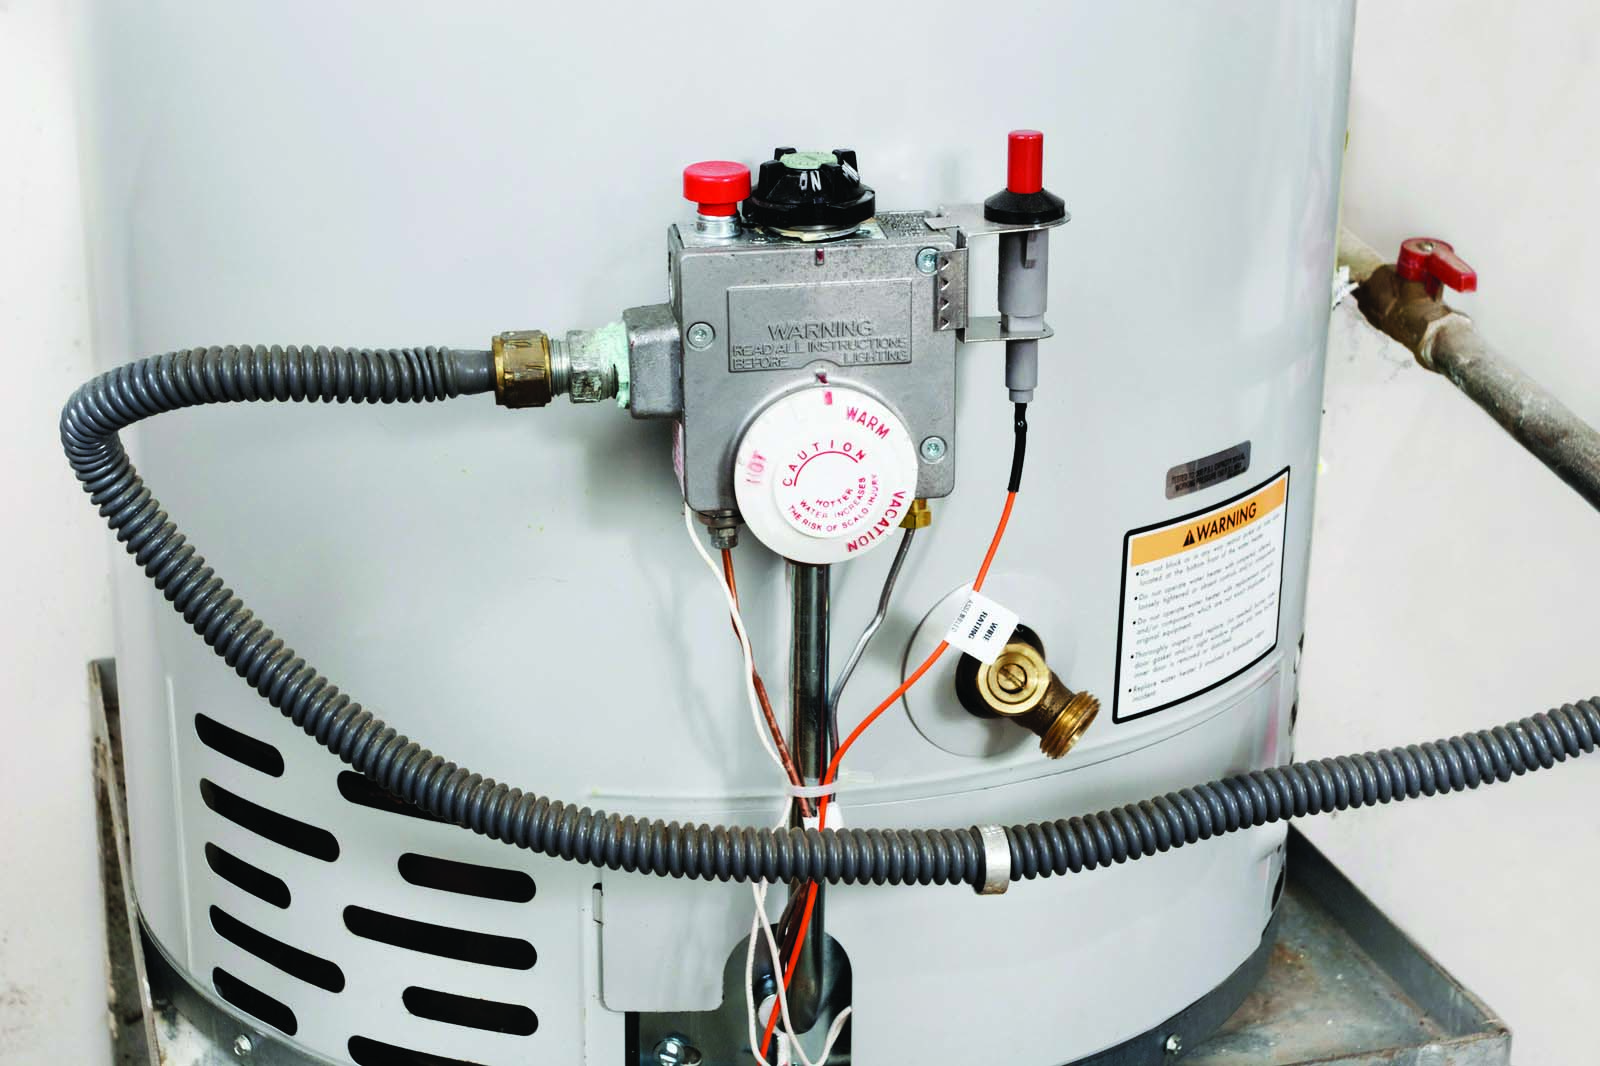 Rheem-Ruud Electric Water Heater,30 Gal,1 PH EGSP30-C